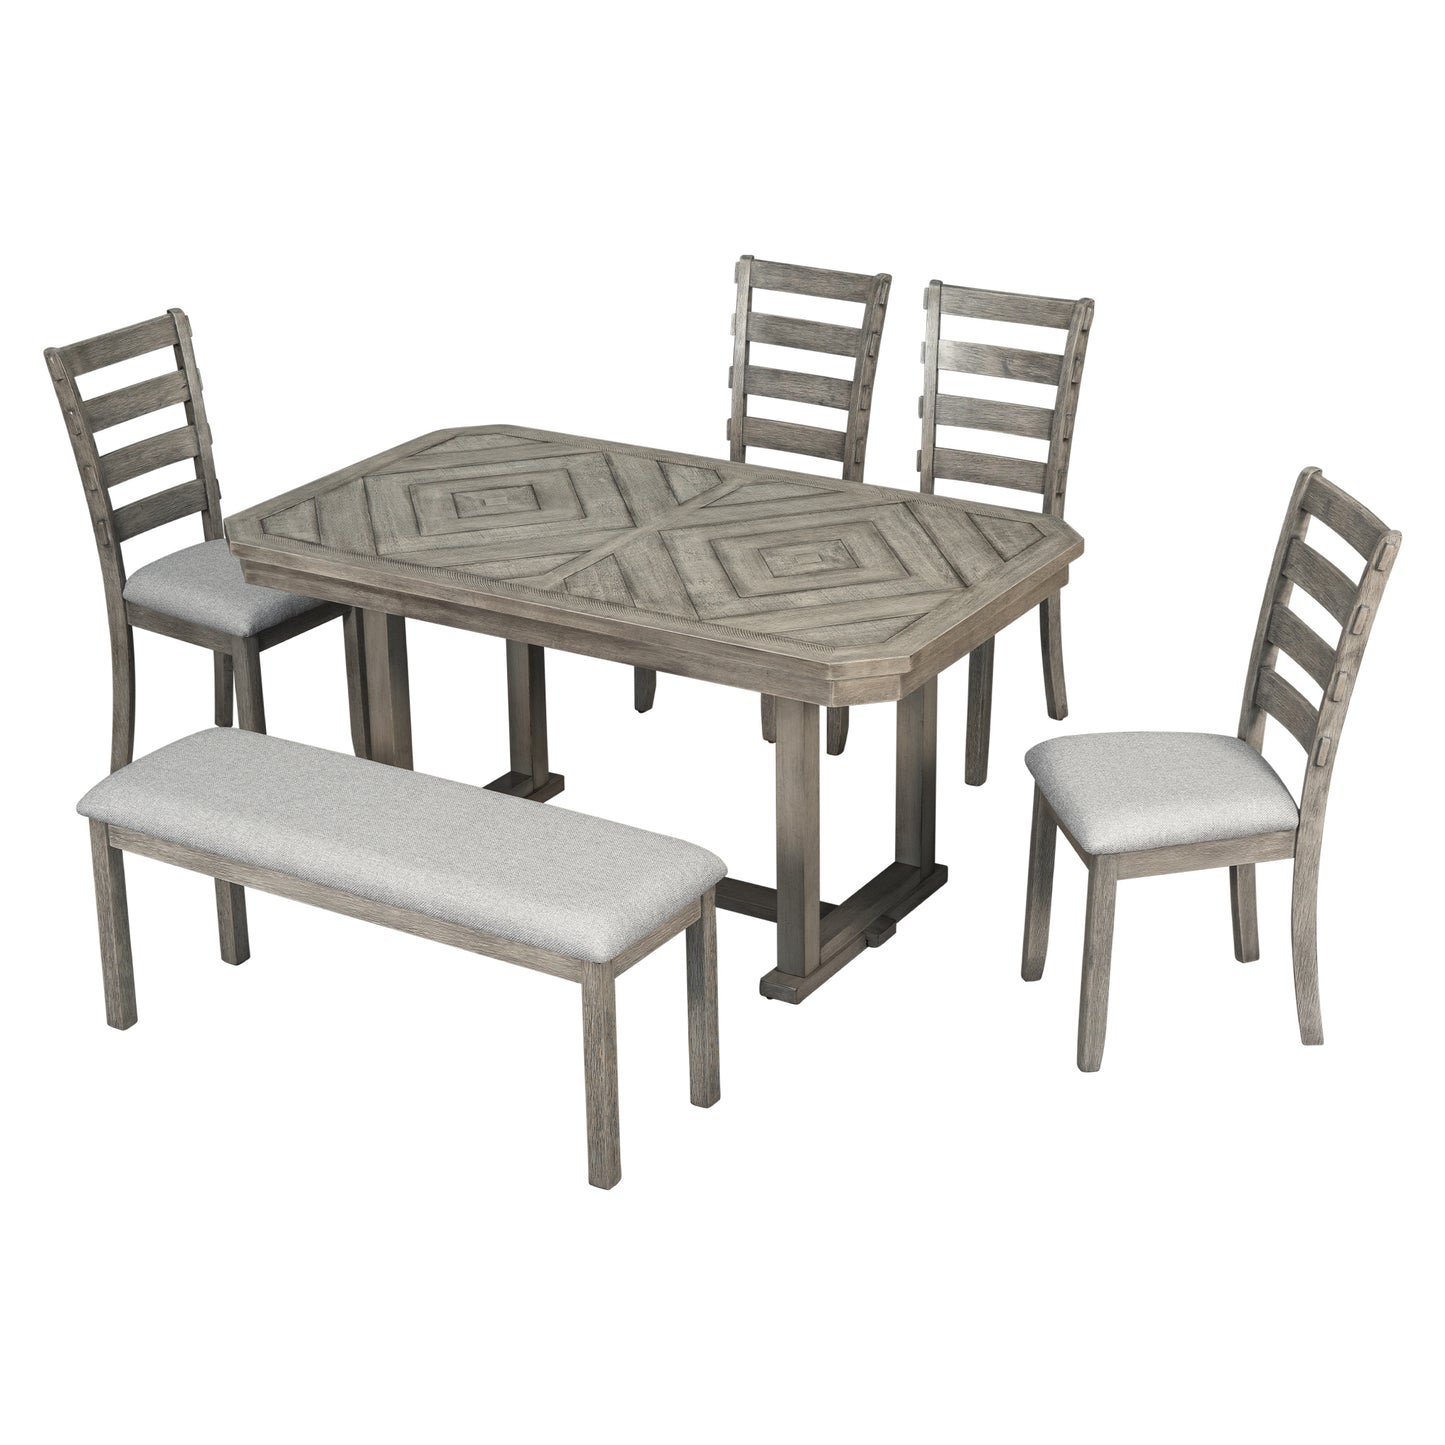 6-teiliges Esstisch-Set mit Chevron-Holzmaserung, gepolsterten Stühlen und Bank (grau)